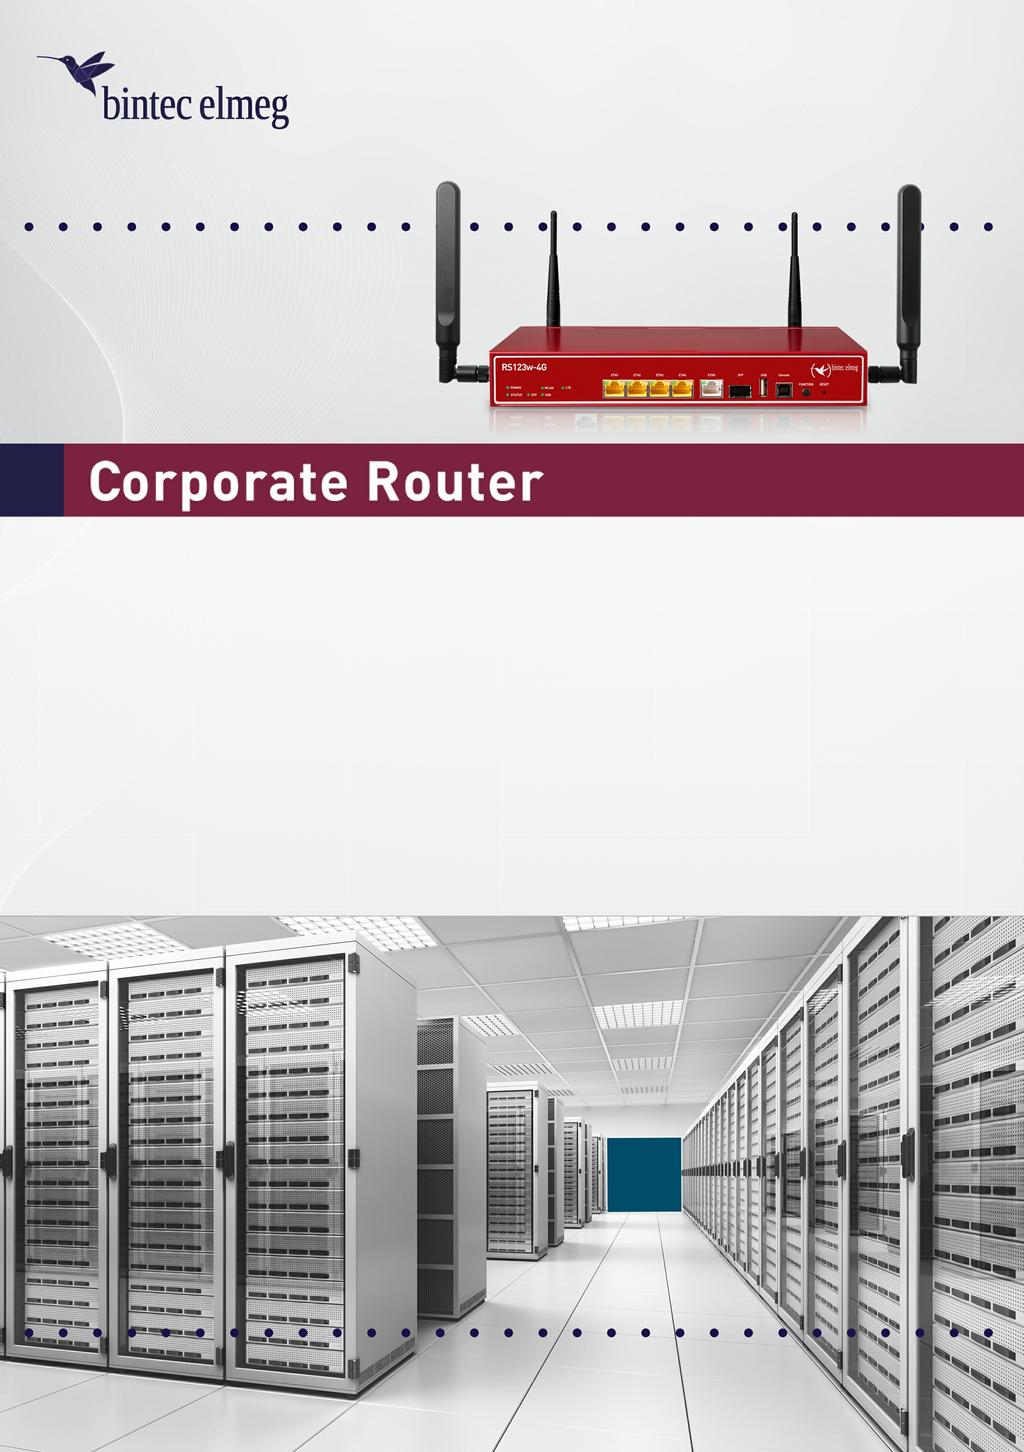 Prof. Gigabit-Ethernet-Router mit 11n-WLAN und LTE(4G) WLAN 802.